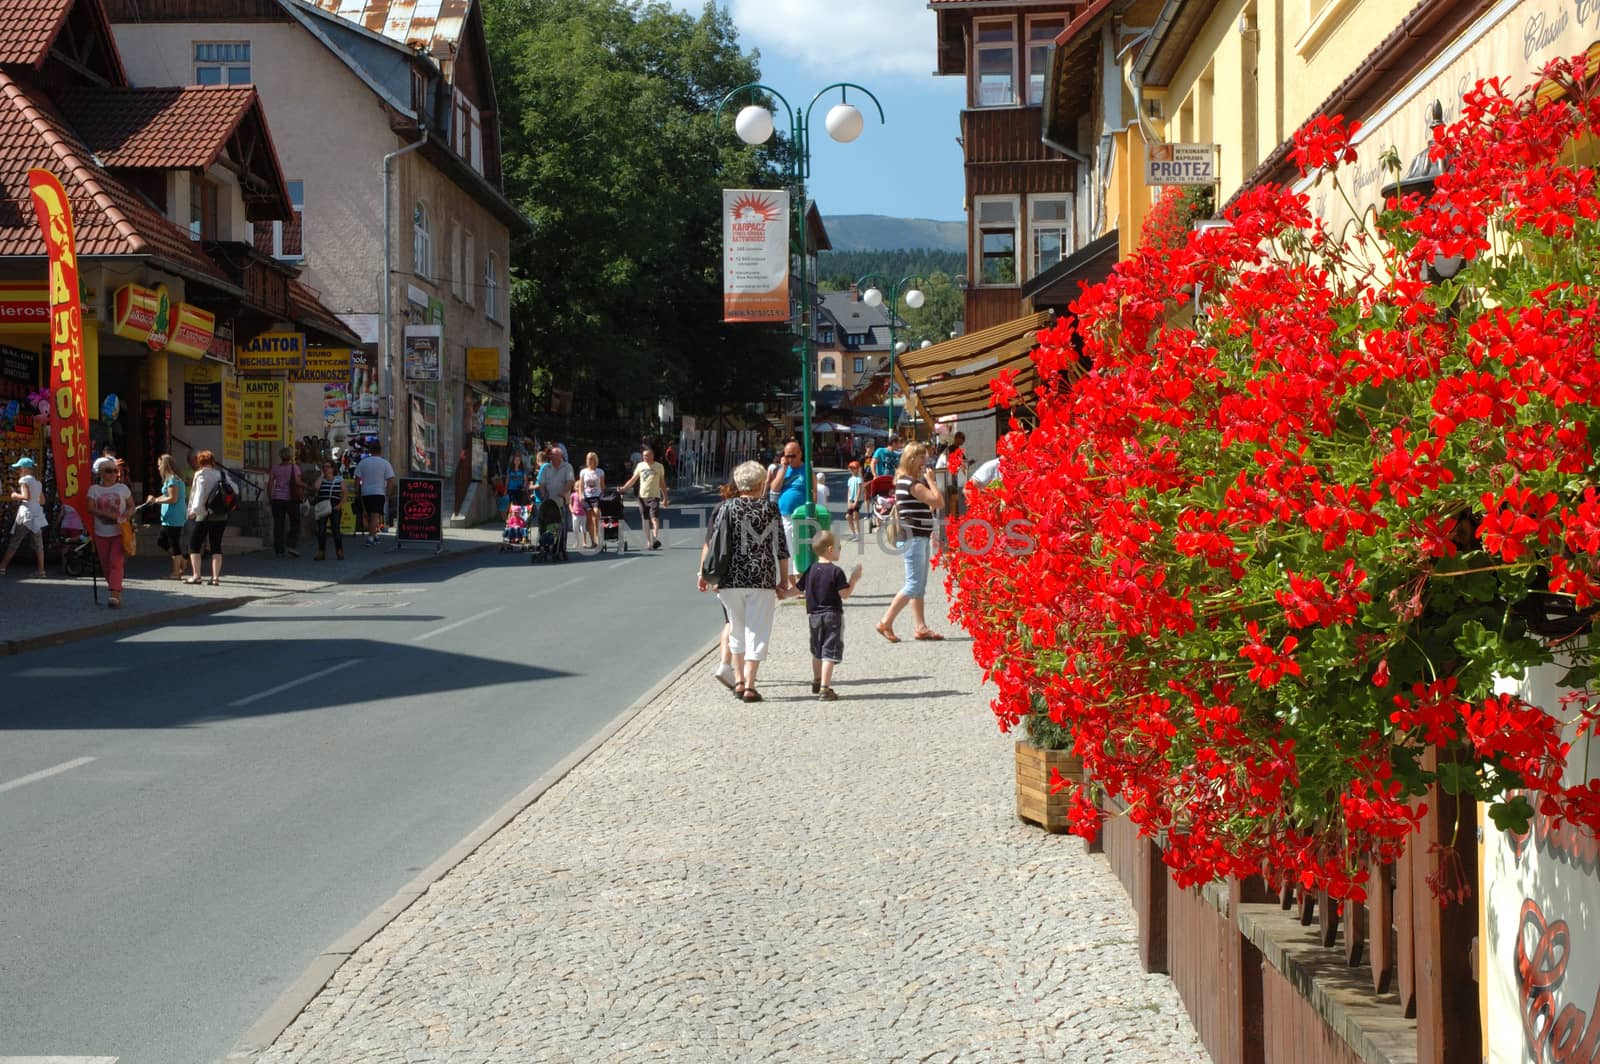 Main street in Karpacz city in Karkonosze mountains Poland